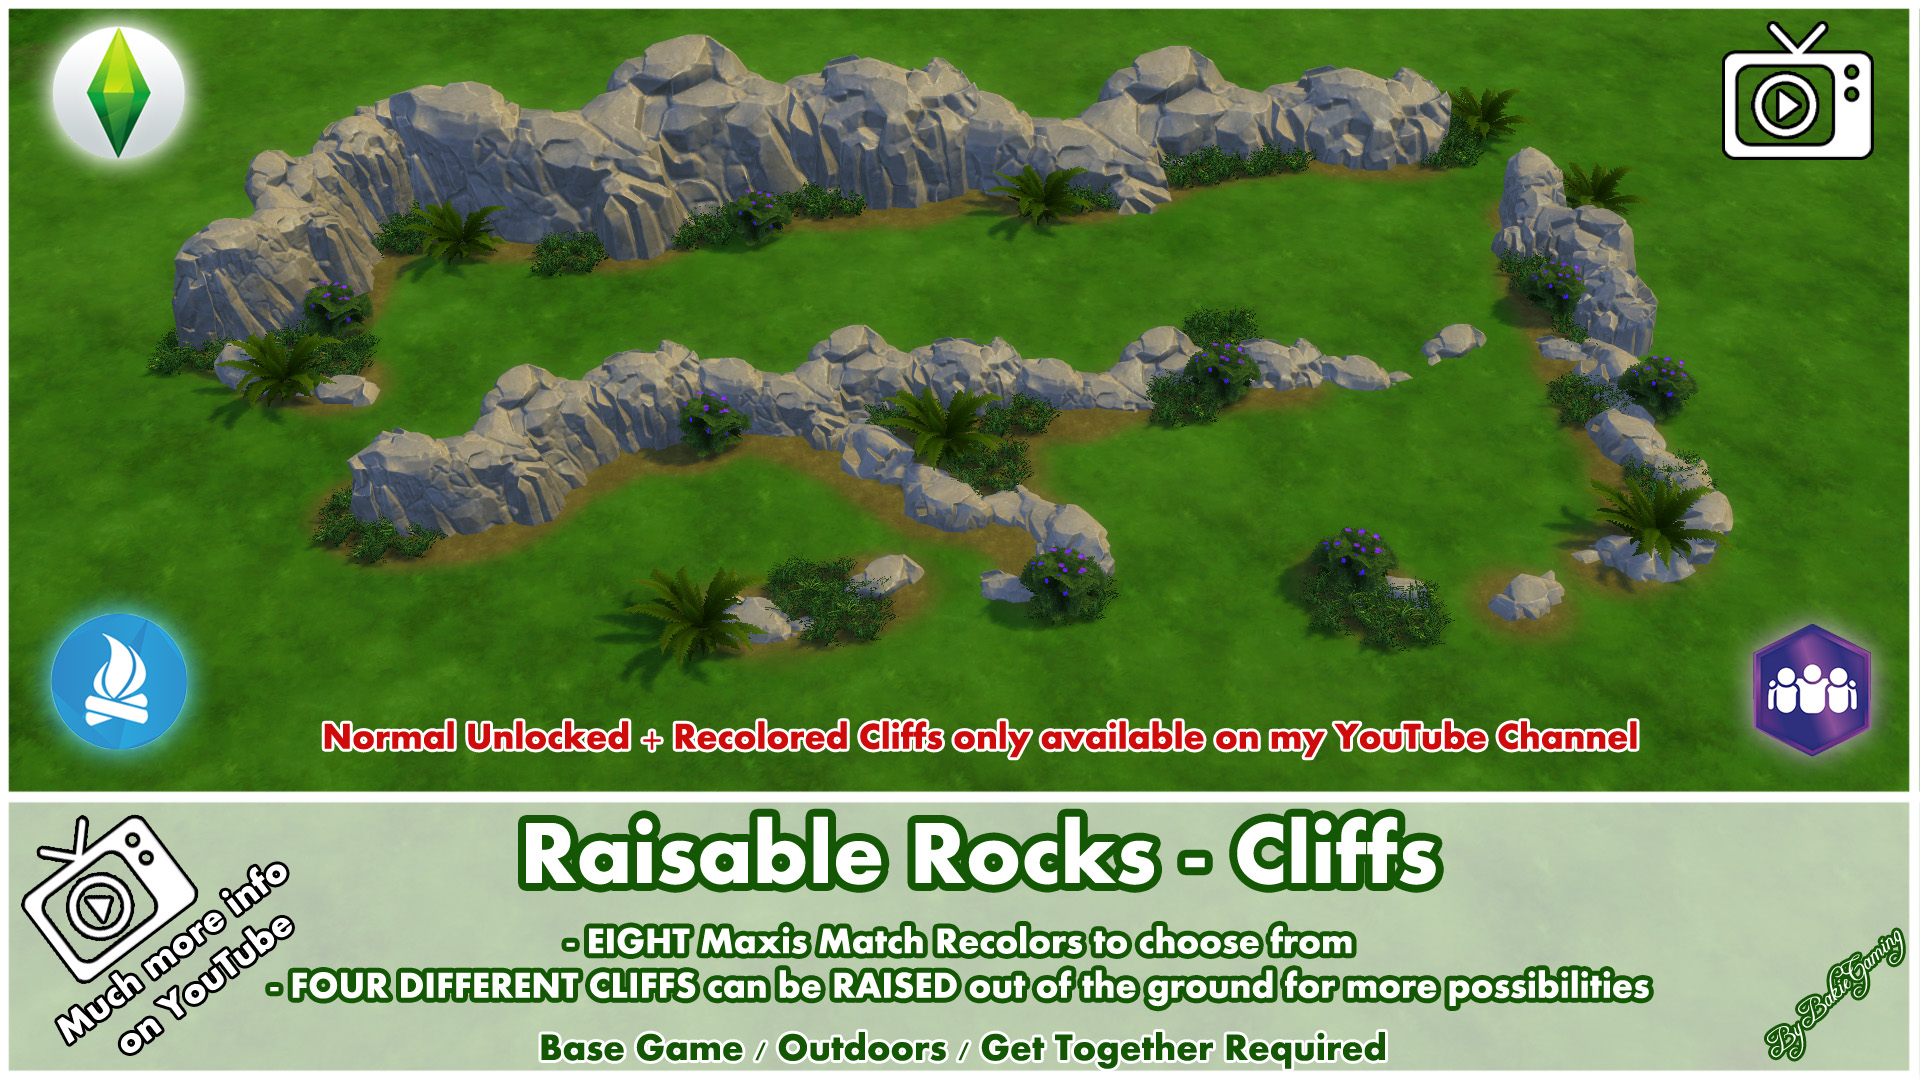 ModTheSims - Raisable Rocks - Cliffs